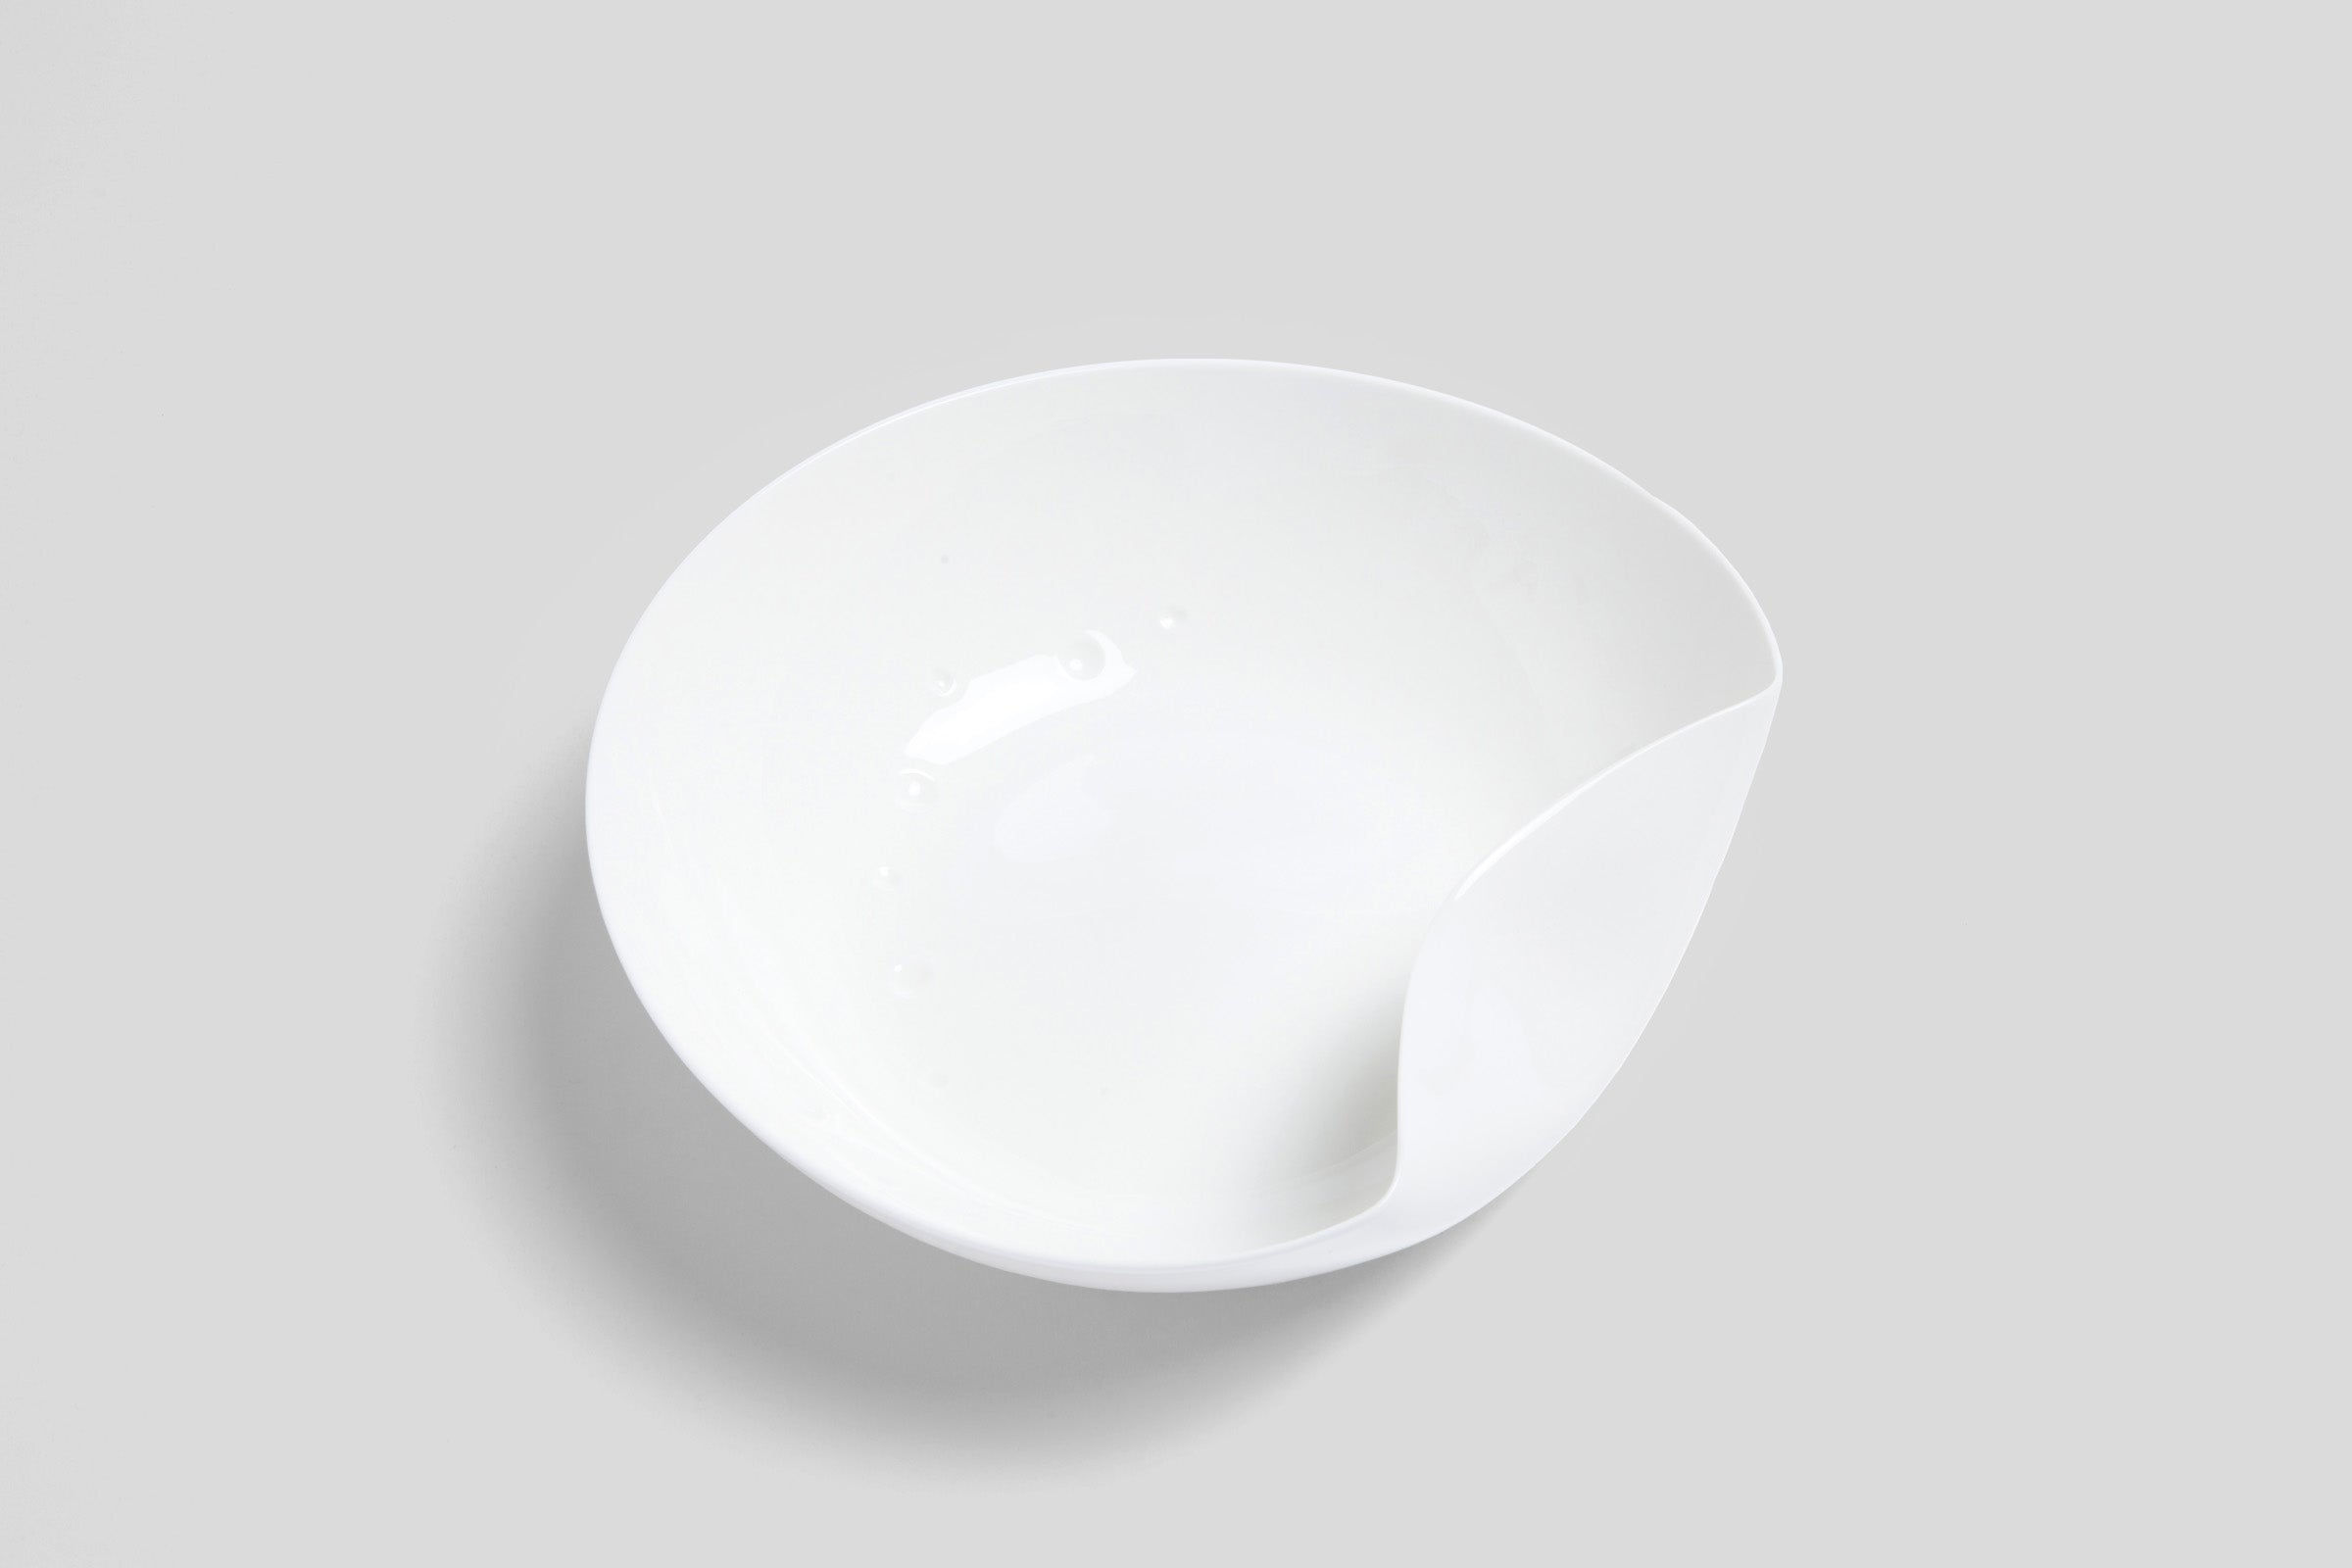 Bodo Sperlein White Sculptural Serving Bowl